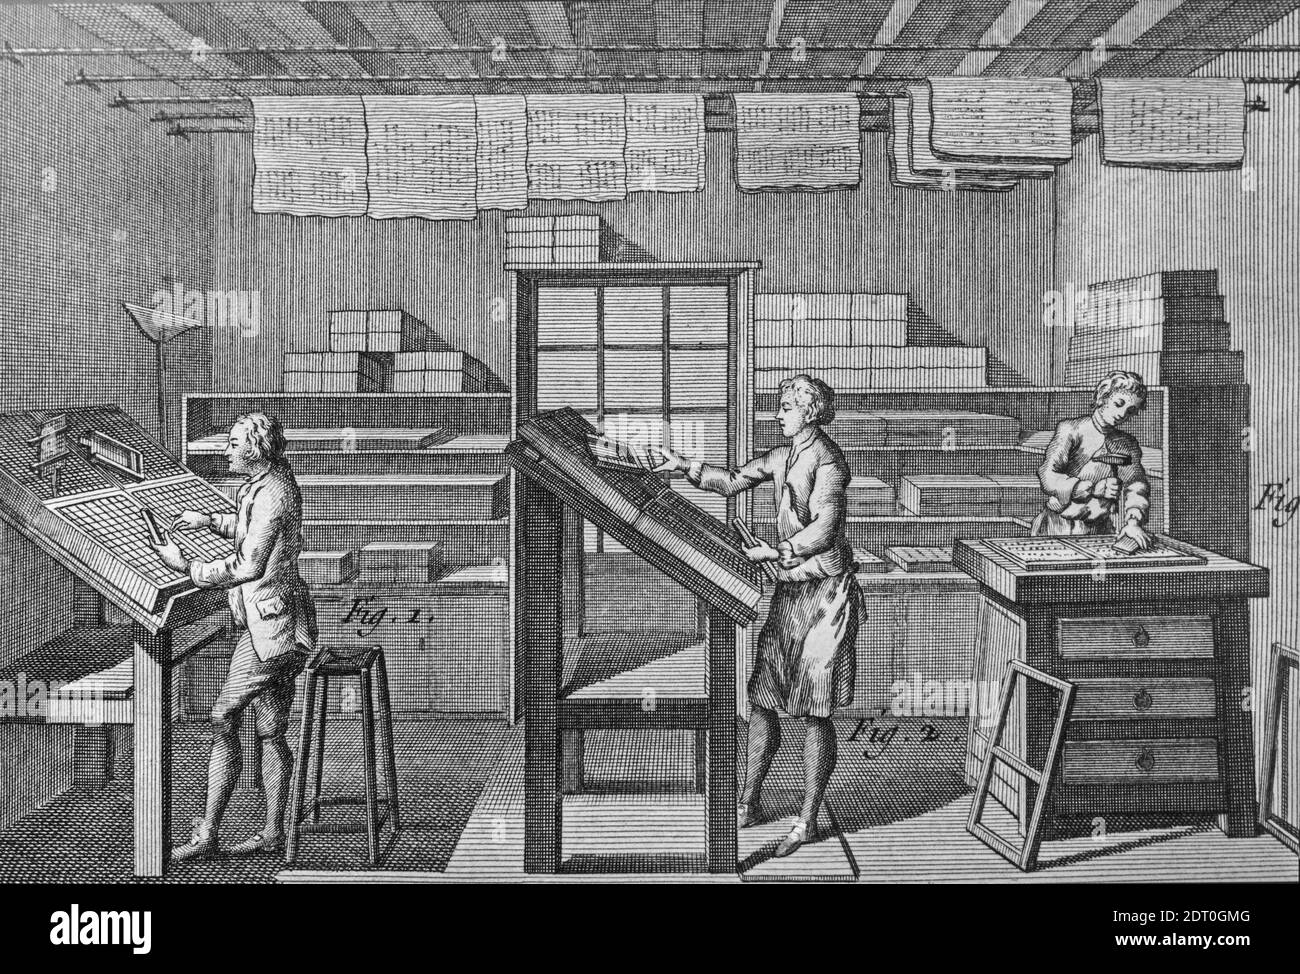 Setzer aus dem 18. Jahrhundert Arrangieren von Typen, die als Setzer für den Buchdruck bezeichnet werden In der Druckerei / Druckerei Stockfoto